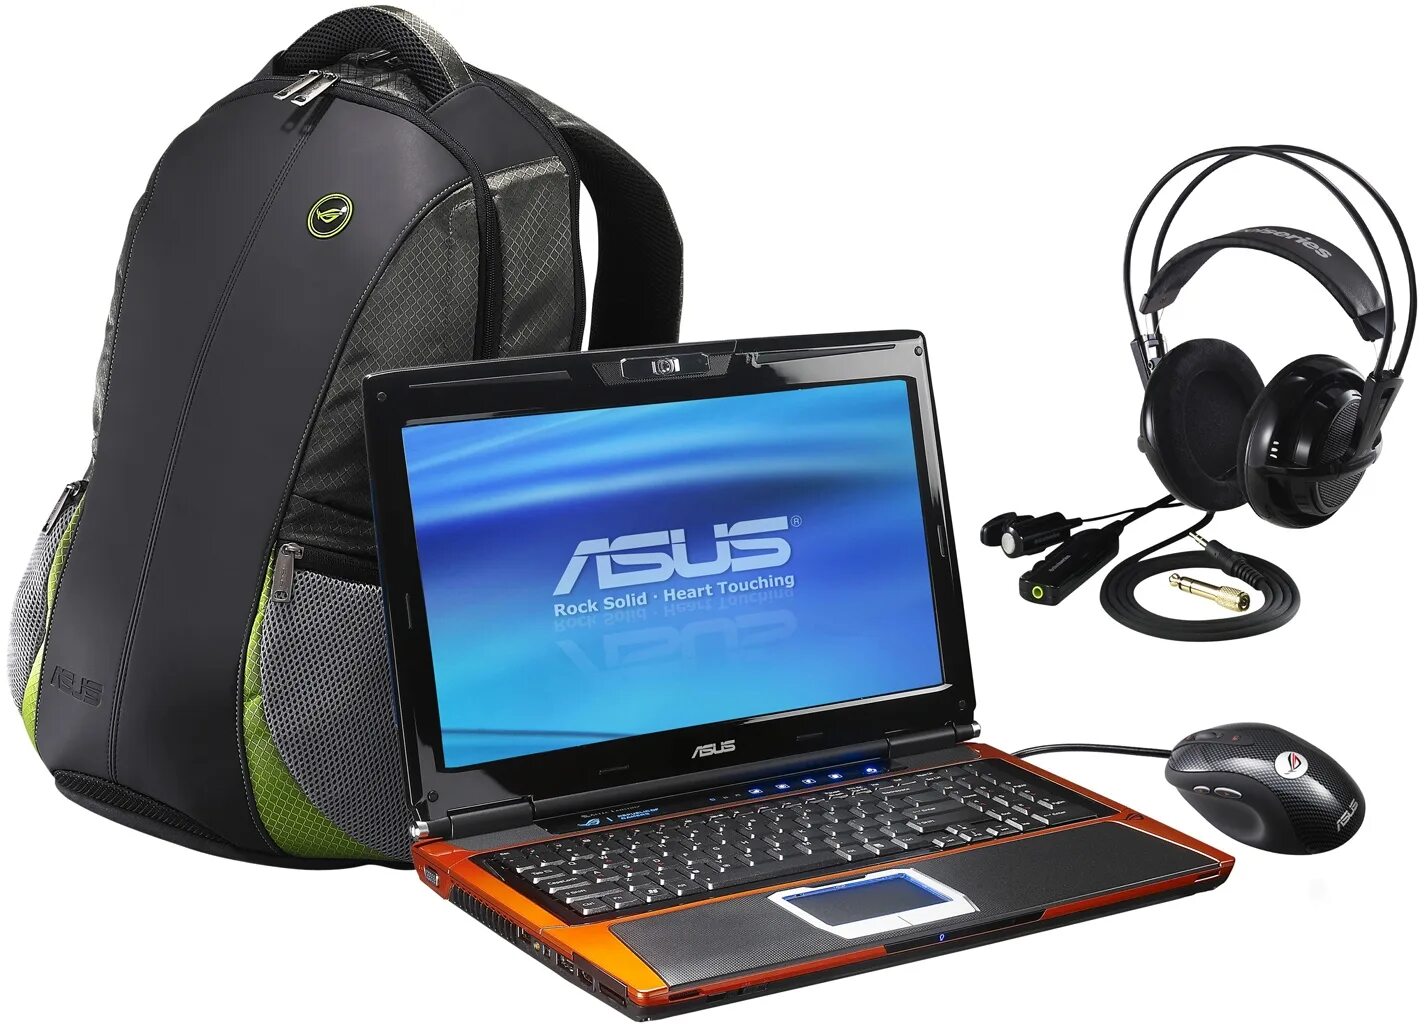 50 g s. ASUS g50v. Командирский персональный планшетный компьютер. Рюкзак асус для ноутбука. Игровой ноутбук ASUS С рюкзаком.